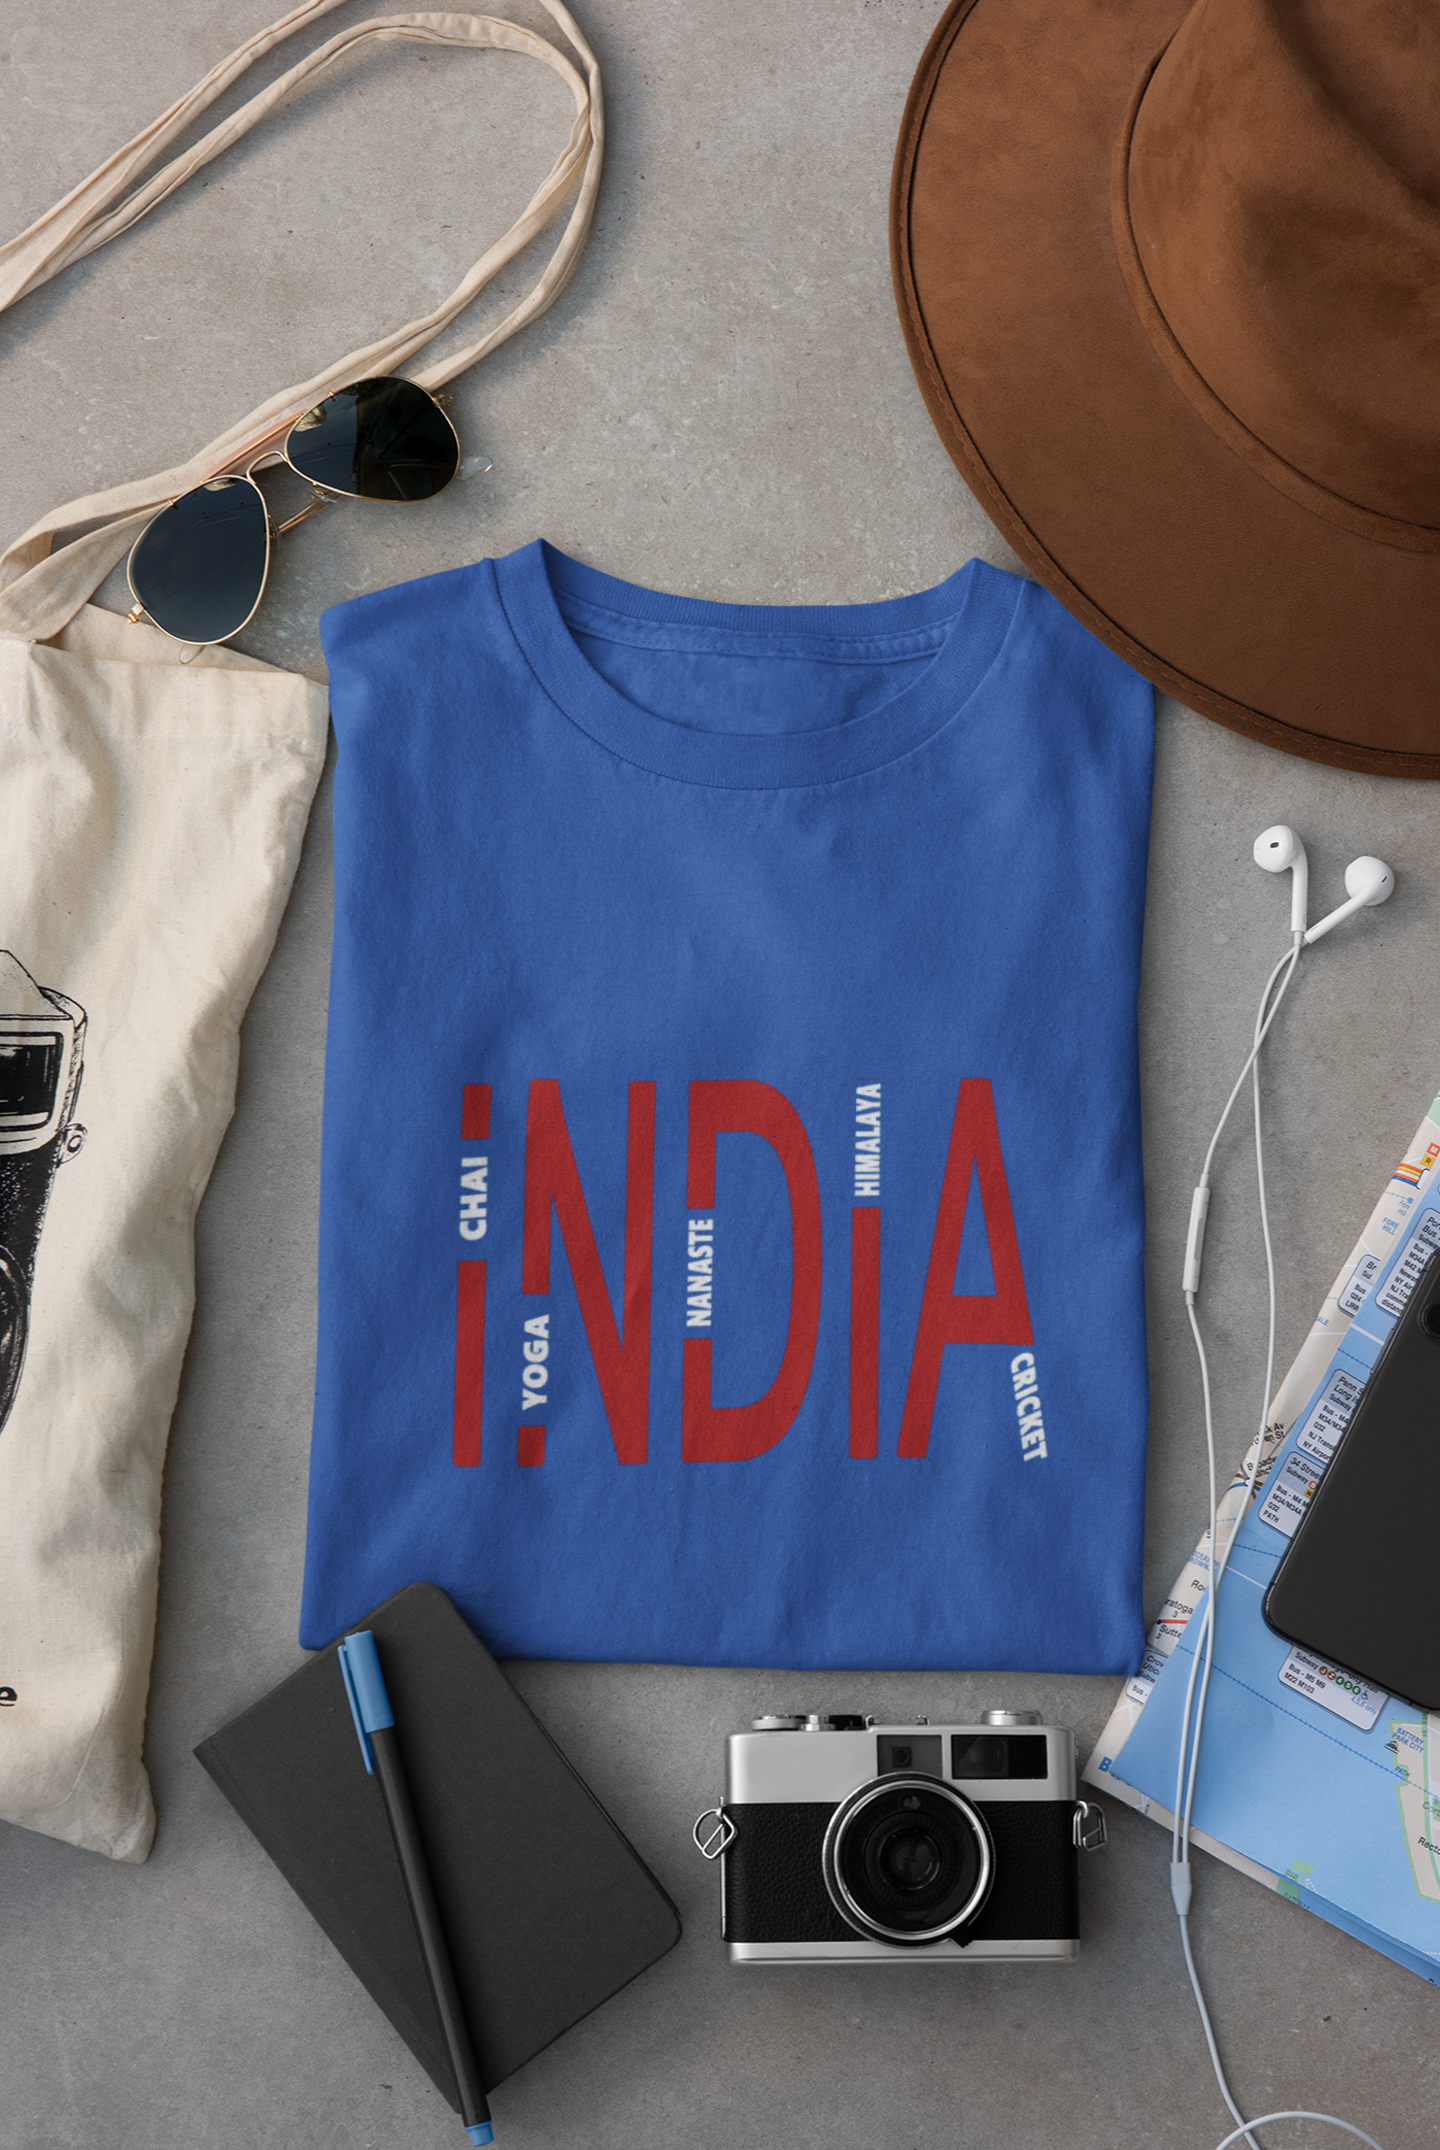 India Women Half Sleeves T-shirt- FunkyTeesClub